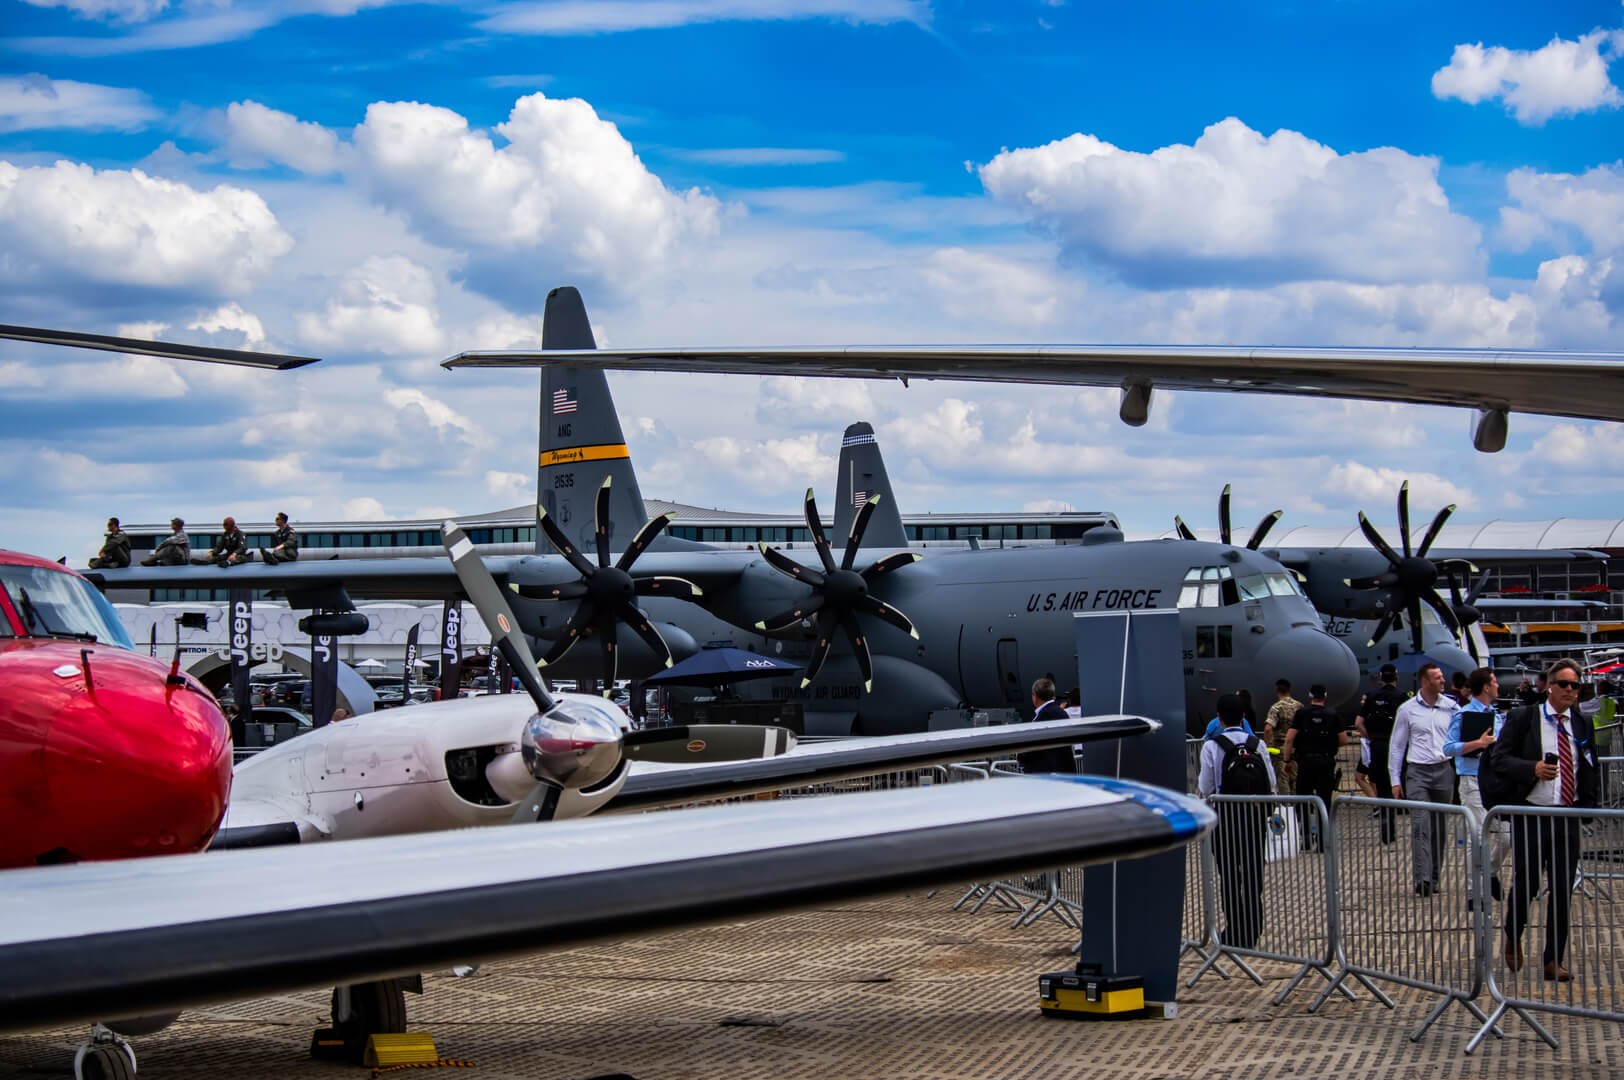 Farnborough, Hampshire, Royaume-Uni - Un avion Hercules en exposition statique, lors du salon aéronautique de Farnborough 2018.